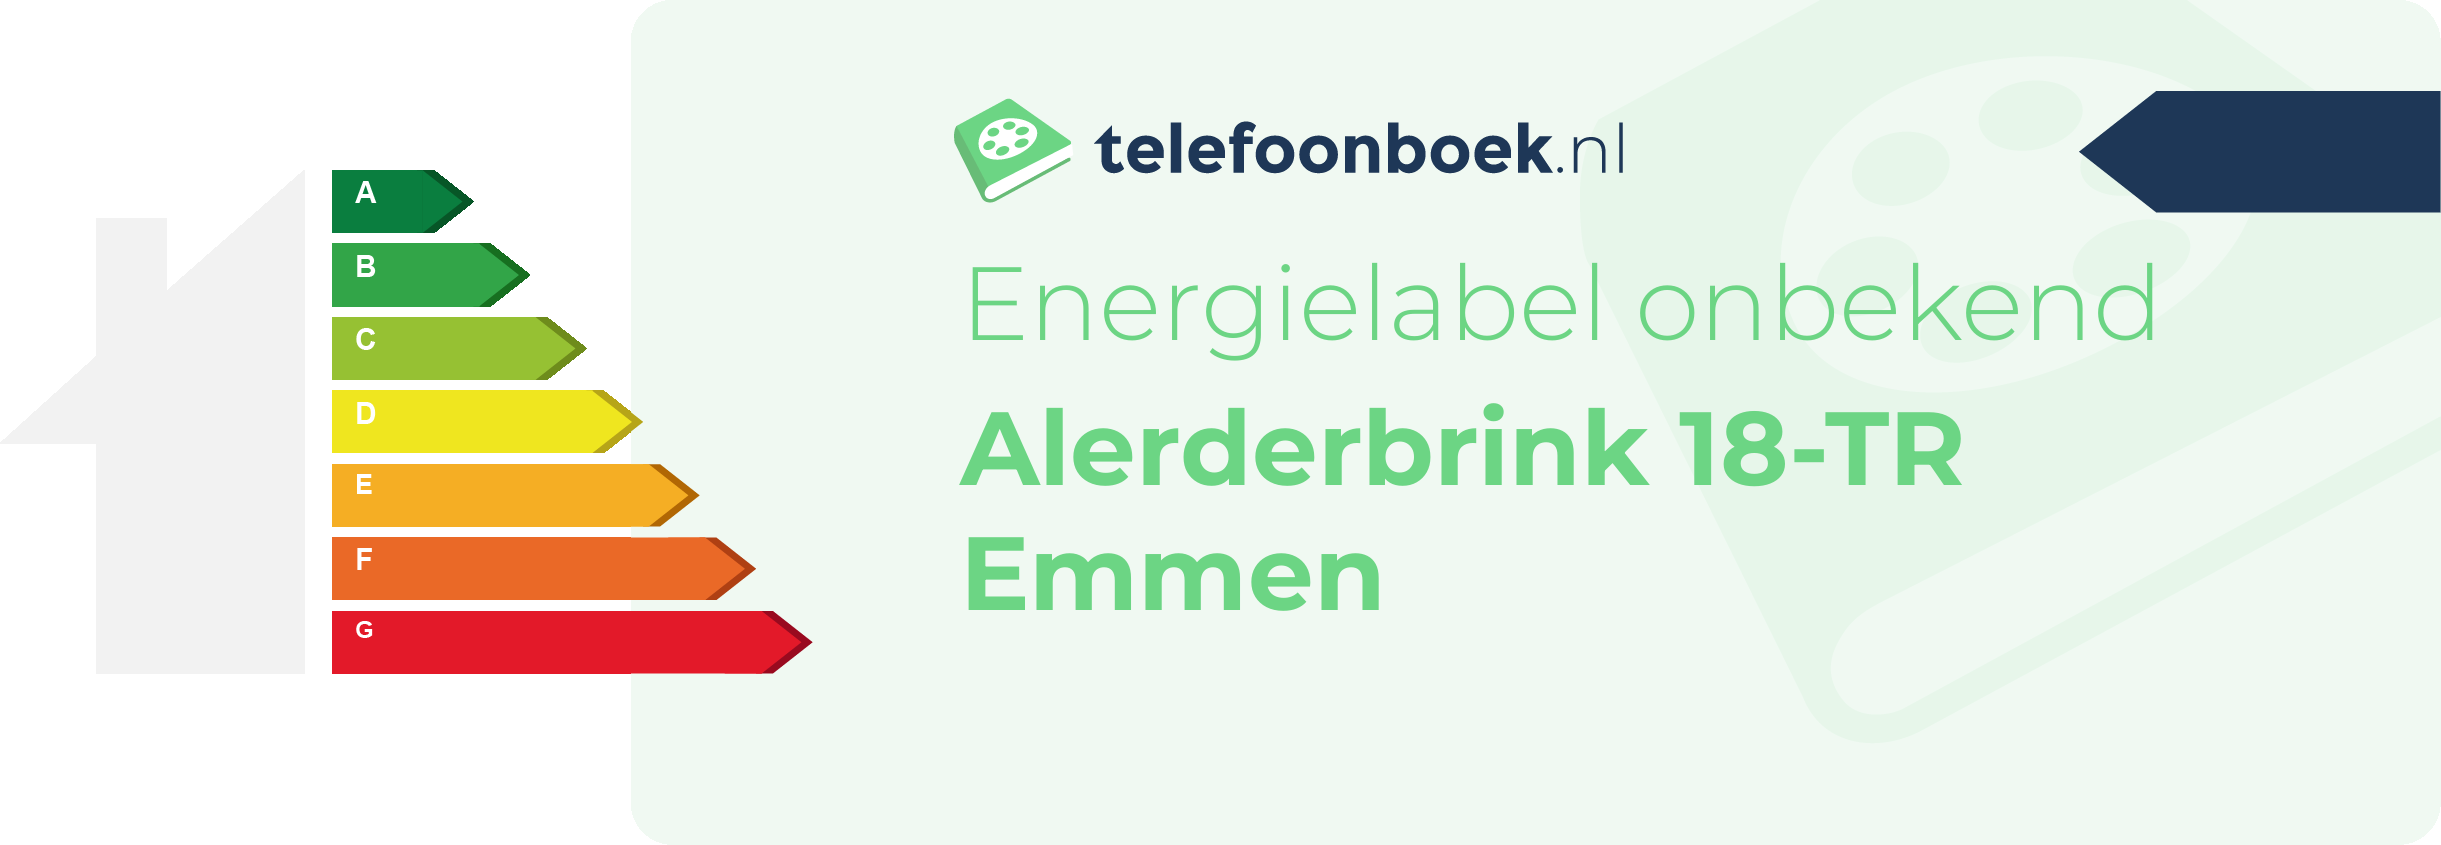 Energielabel Alerderbrink 18-TR Emmen